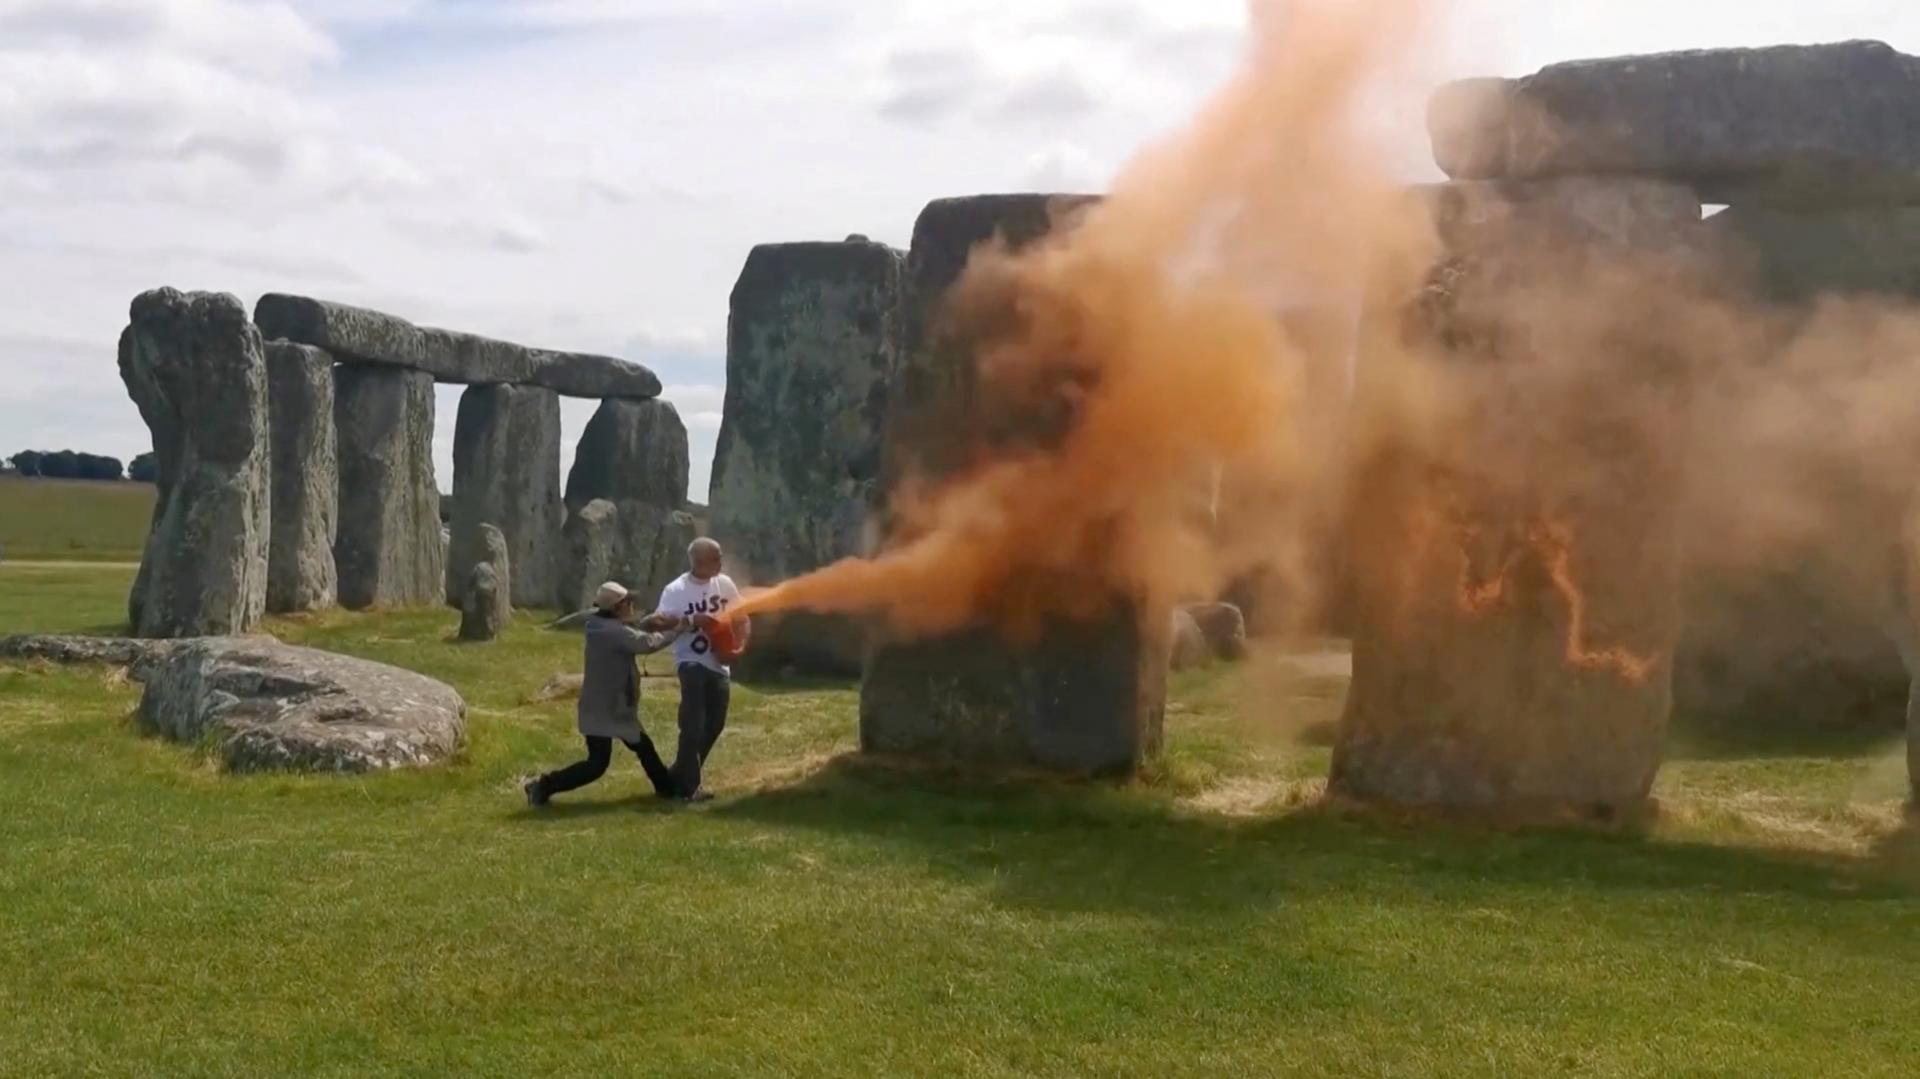 Aktivisti posprejovali prehistorickú pamiatku Stonehenge, polícia ich zatkla